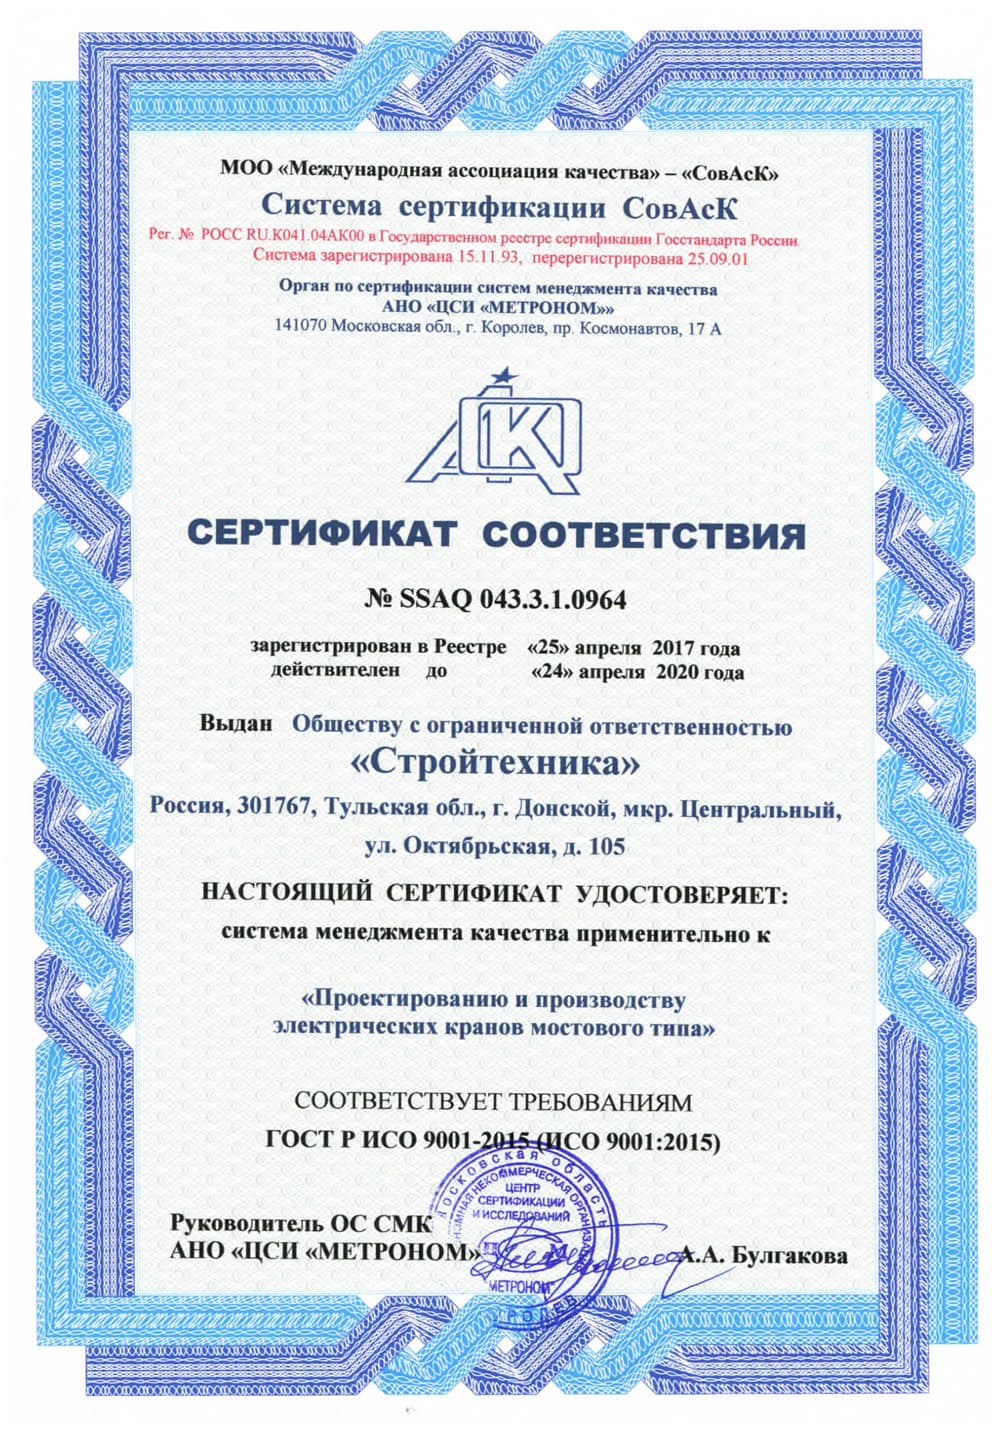 Сертификат соответствия СовАсК